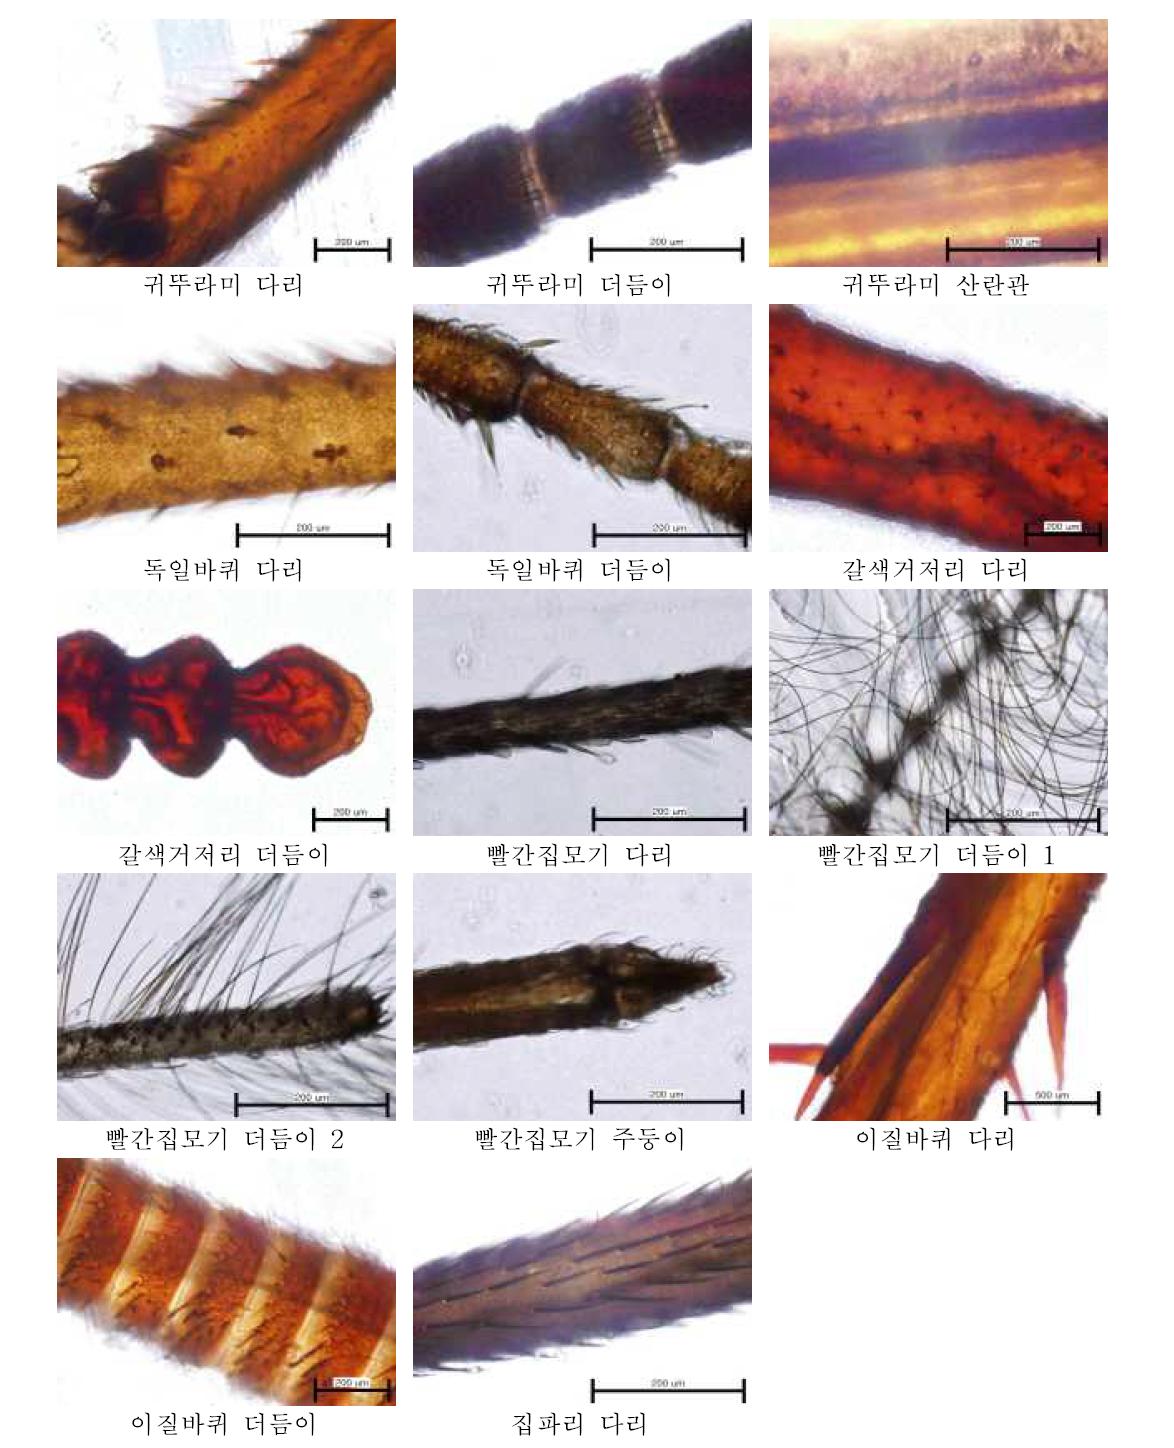 광학현미경을 이용한 곤충의 신체부위별 투과상 관찰 결과